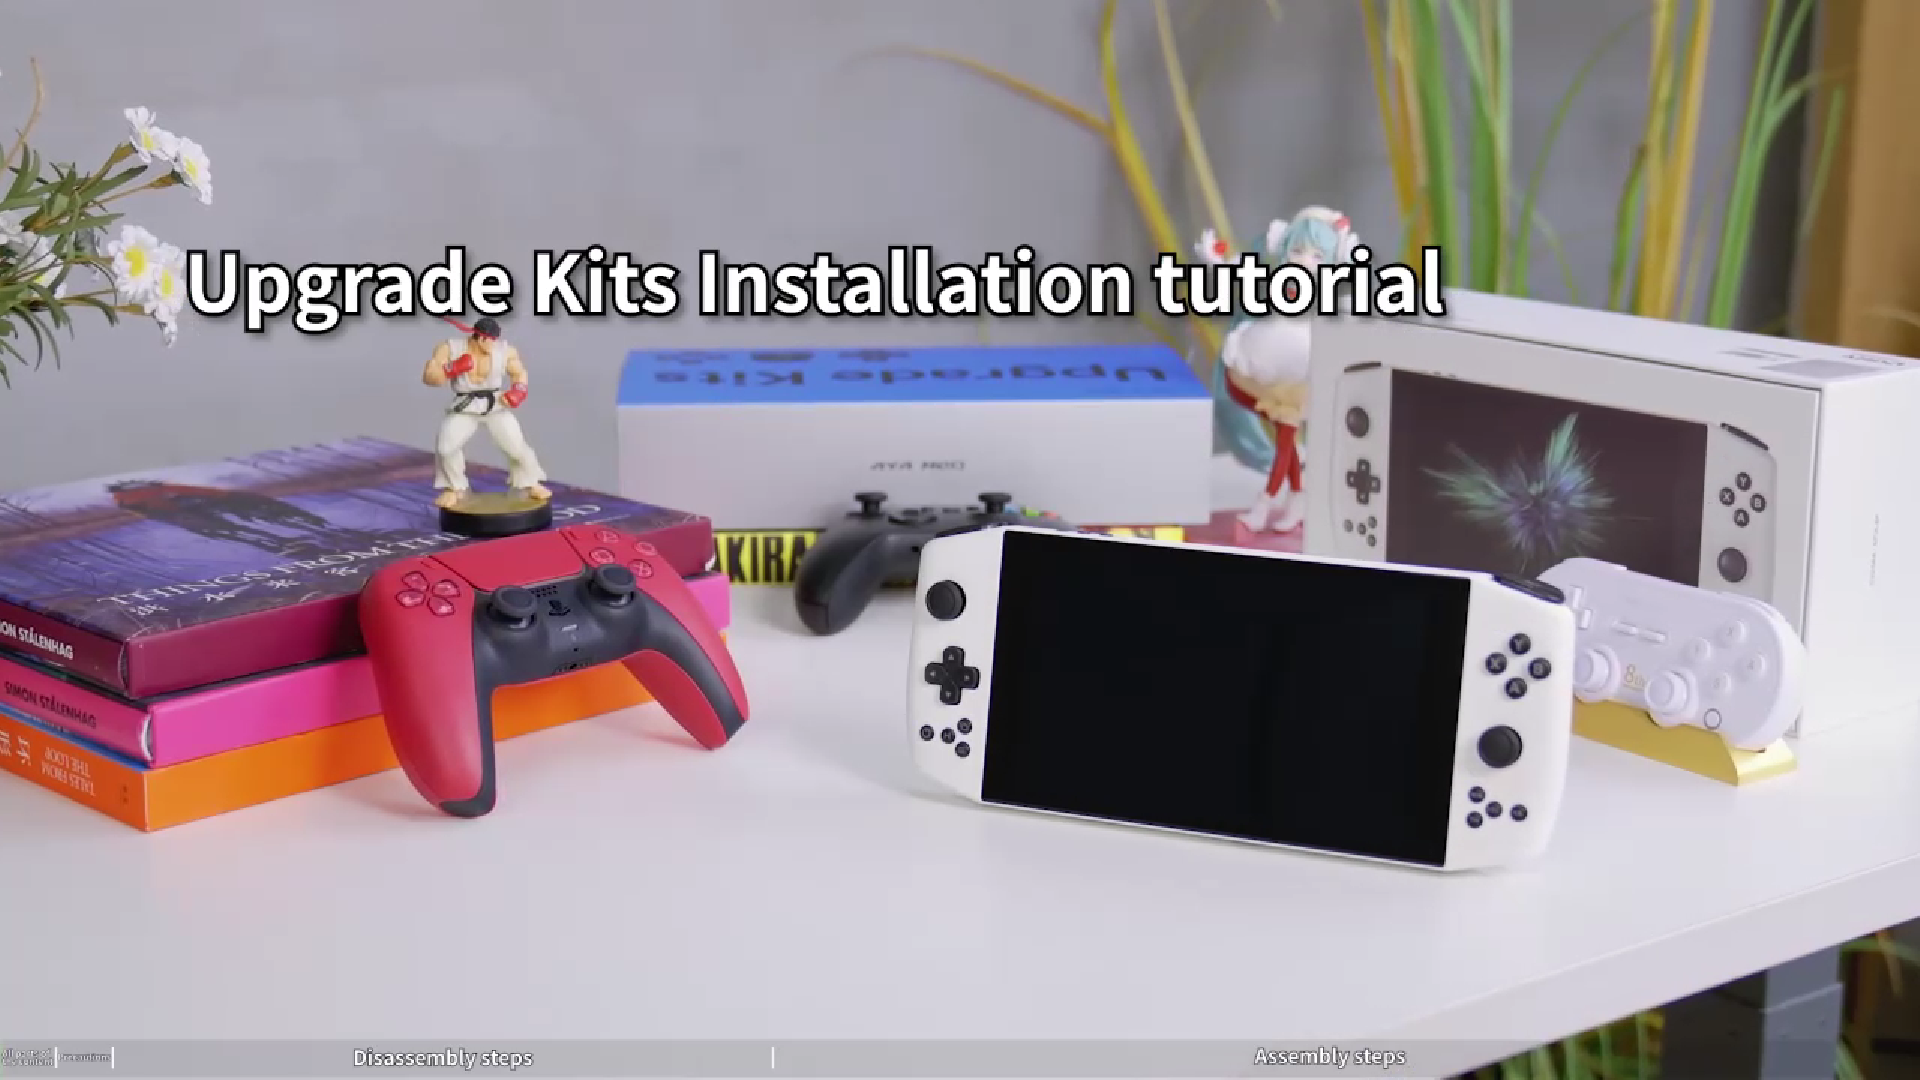 Upgrade Kits Installation tutorial